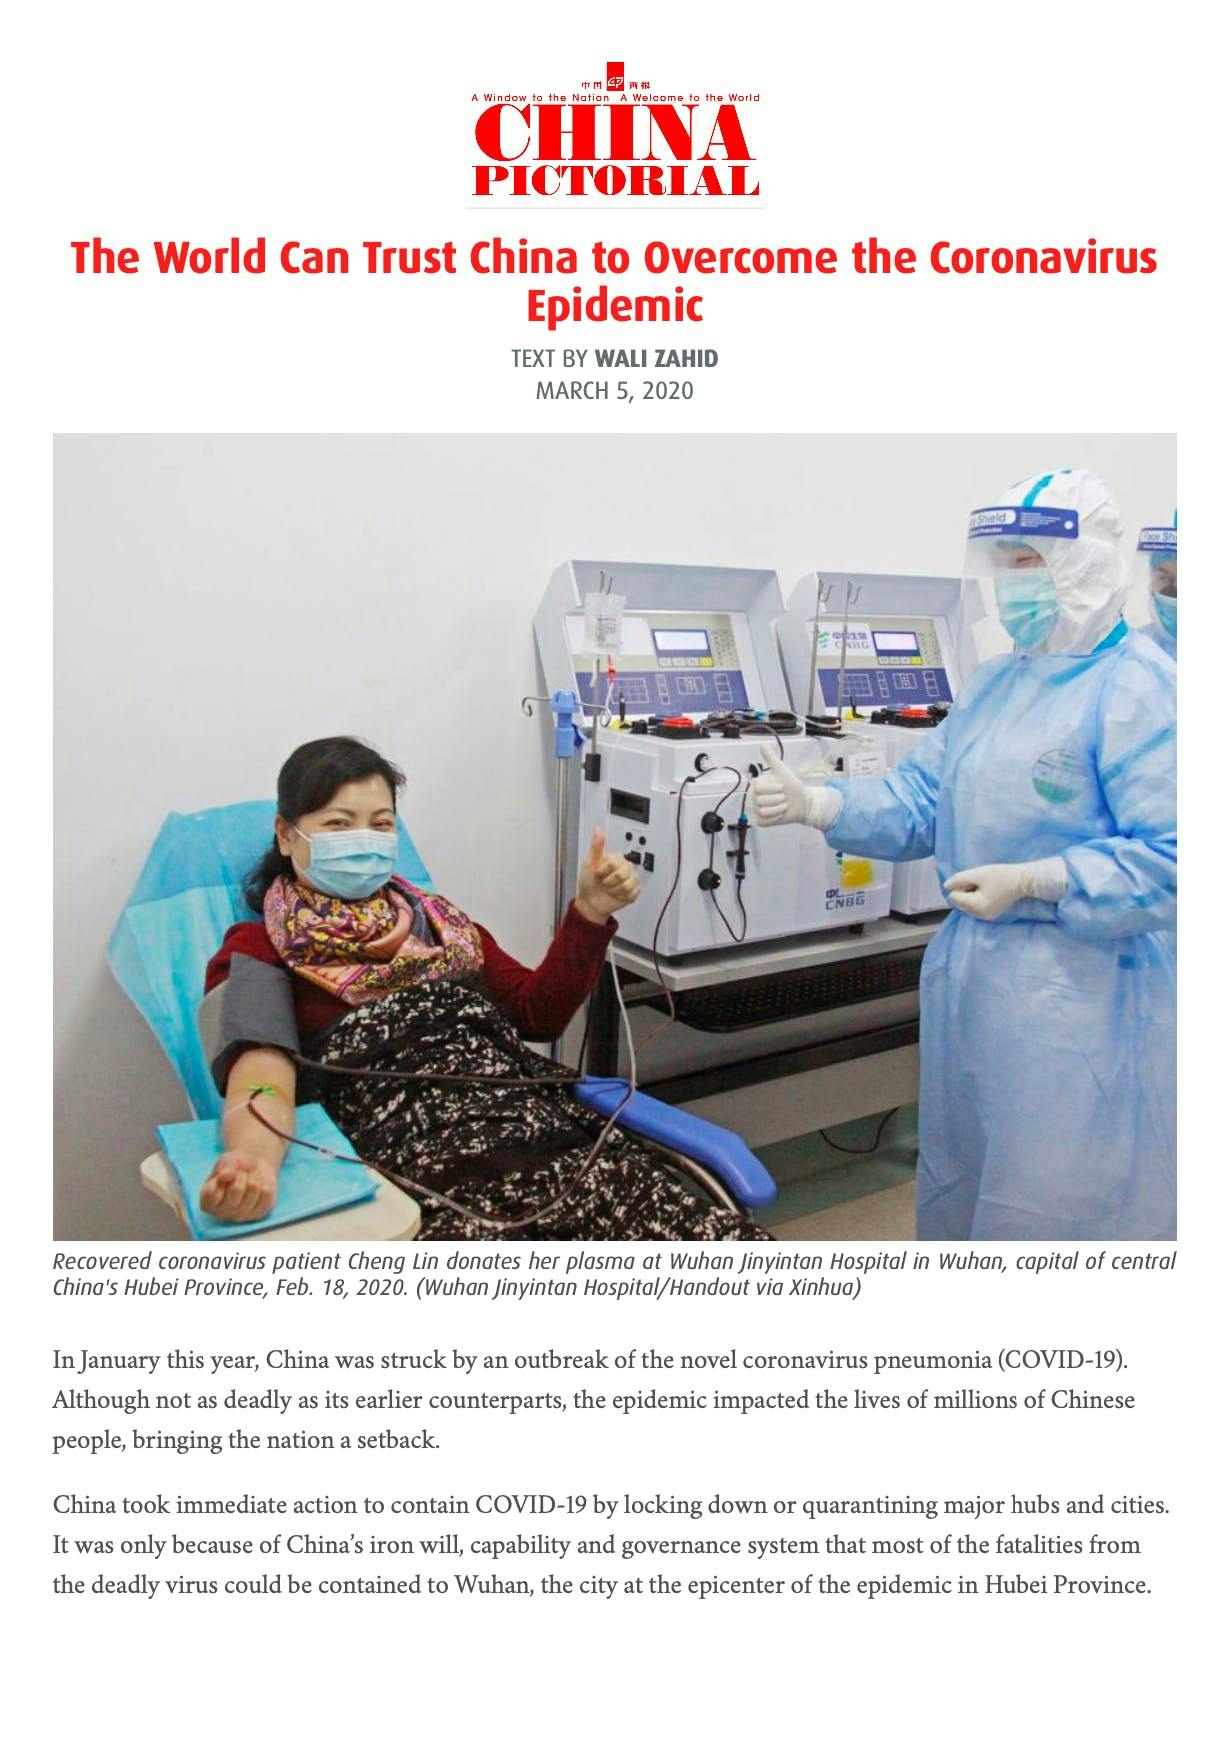 Trust China to overcome Coronavirus epidemic